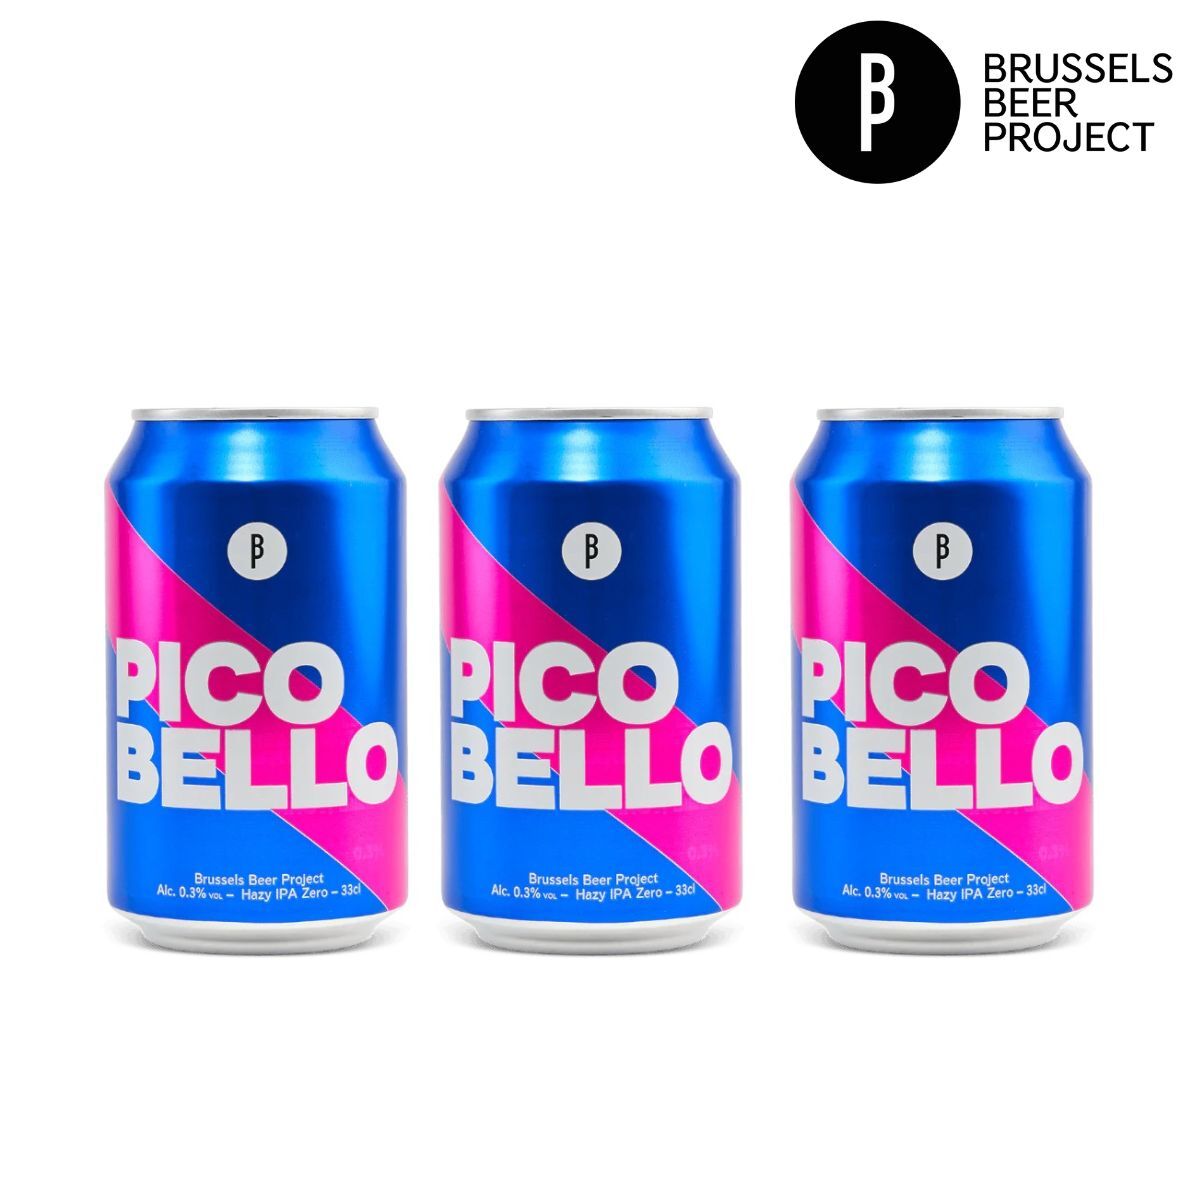 比利時無酒精啤酒 Brussels Beer Project Pico Bello 330ml * 3 罐